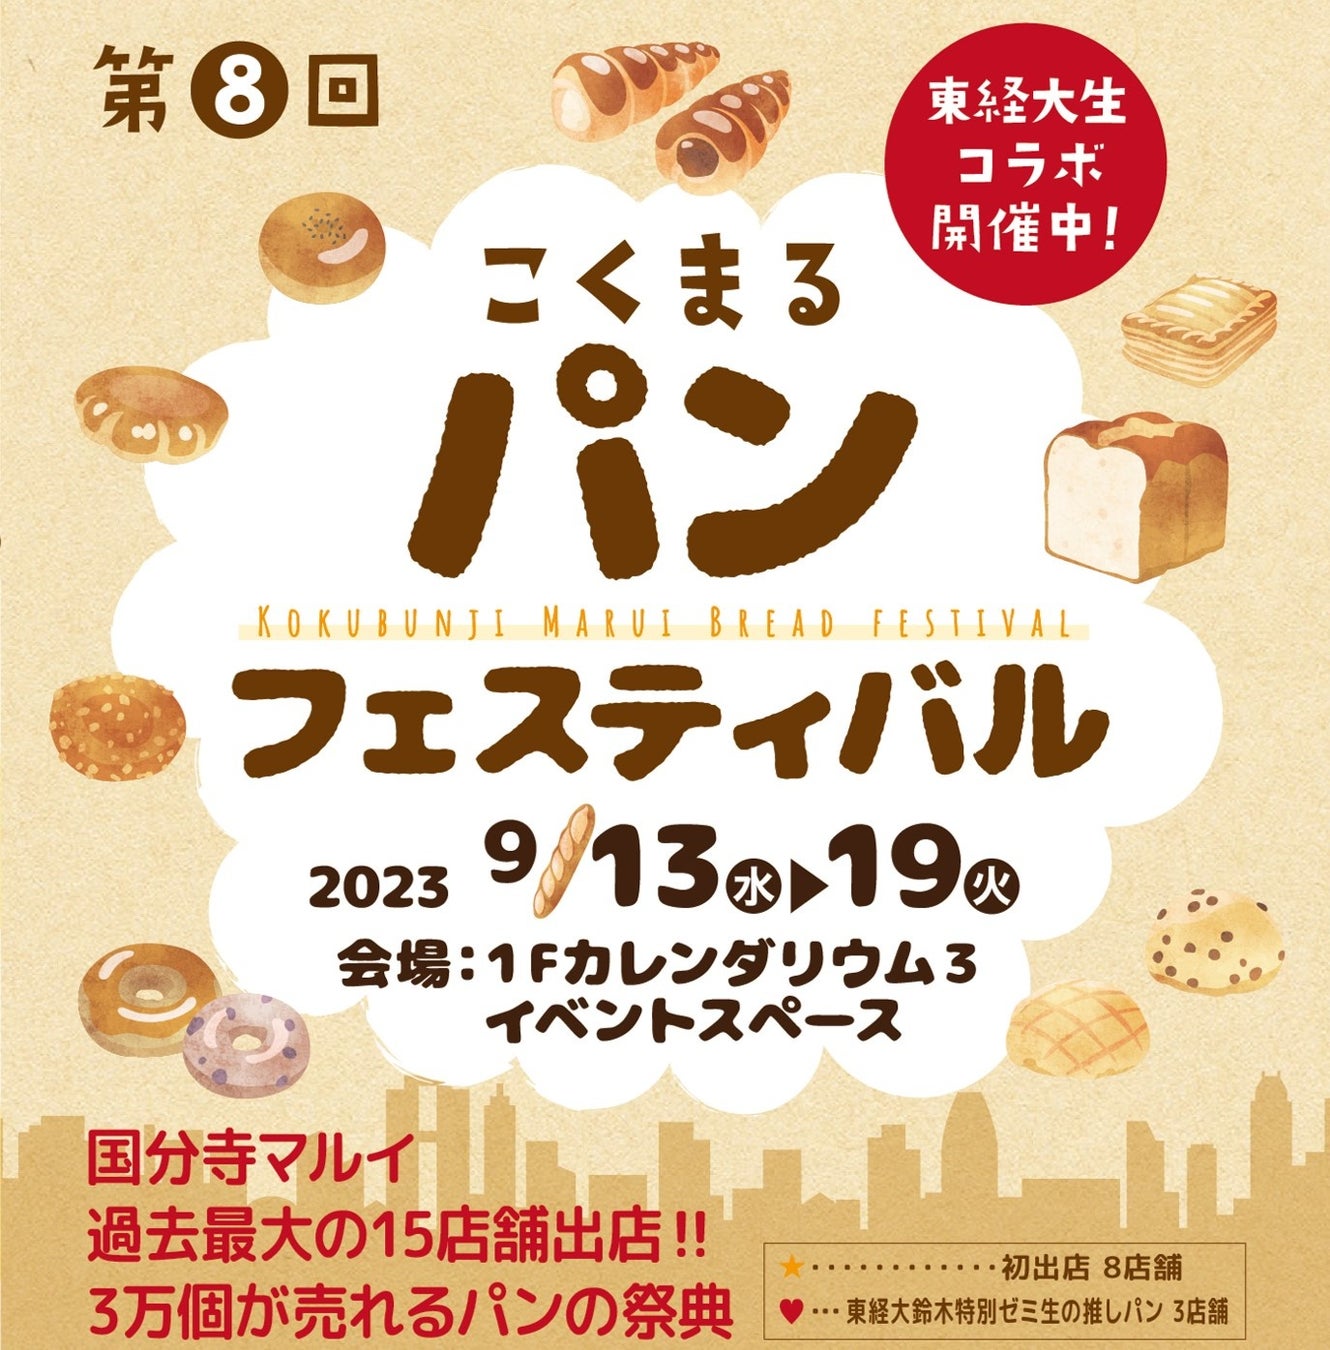 神戸界隈の美味しいお店が集まる人気イベント
『G-FLAT marche vol.5～私のとっておき！美味しい時間～』　
9月23日(土)・24日(日) 直営インテリアショップで開催！